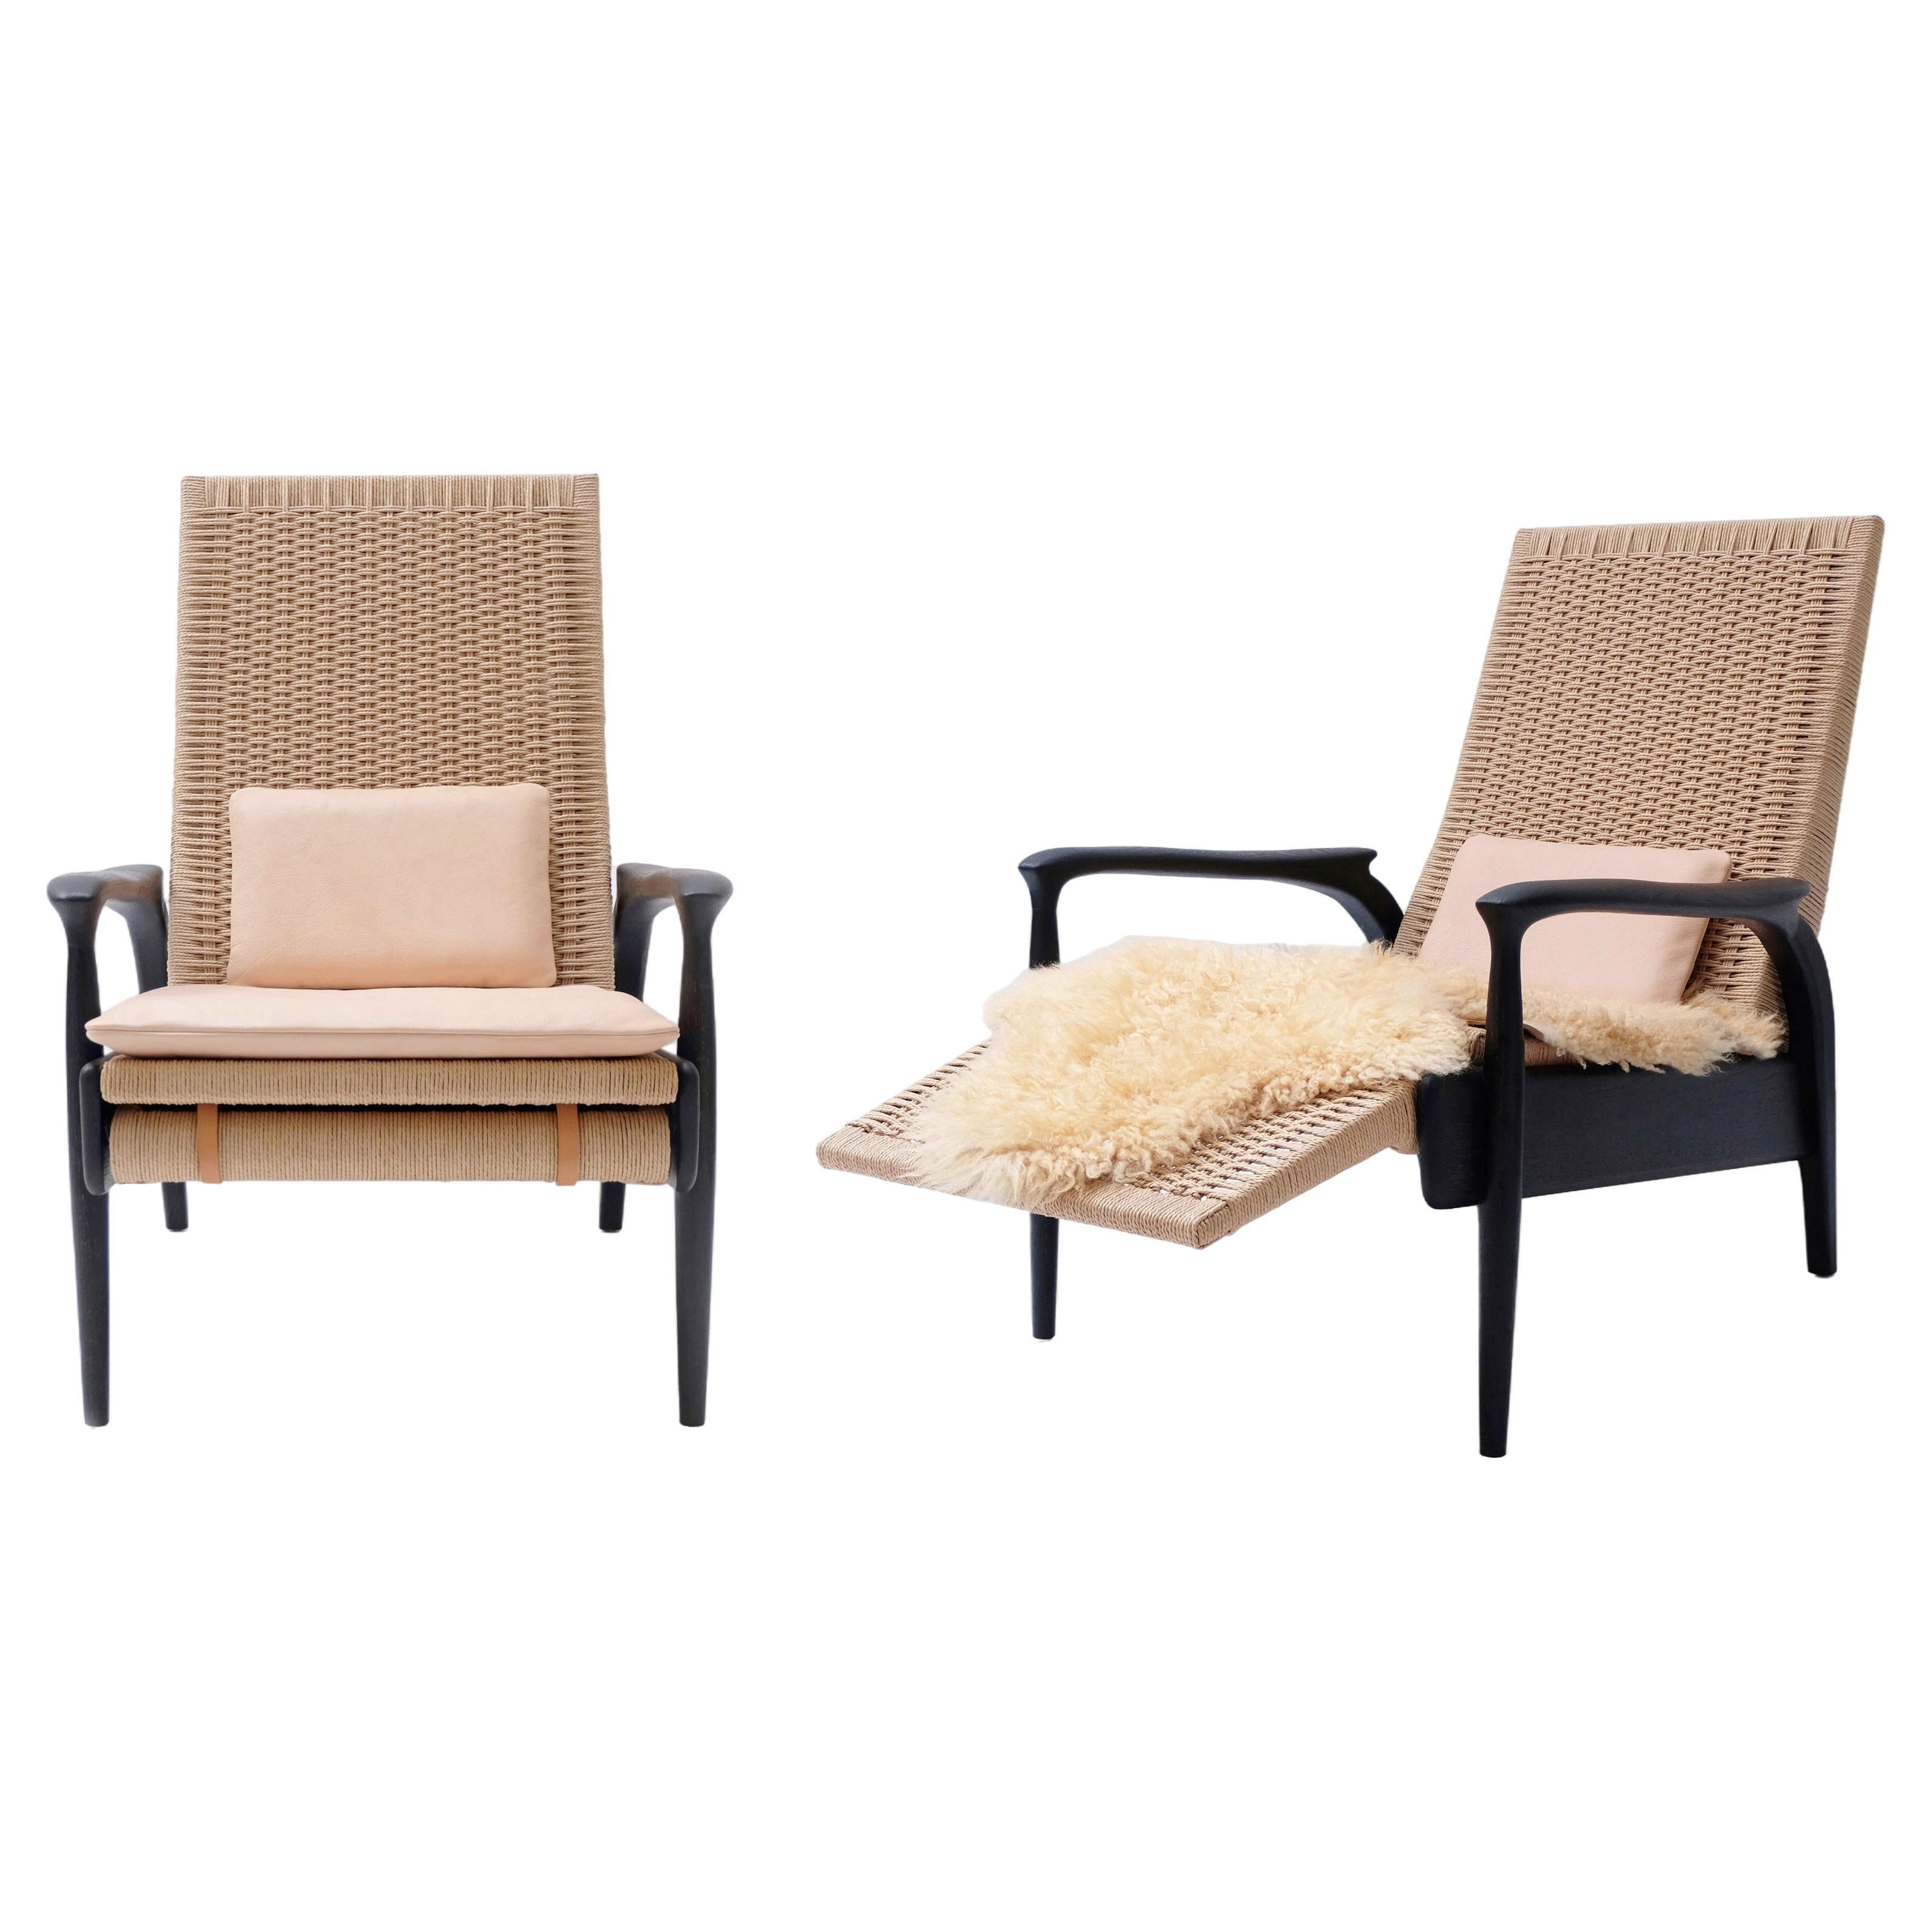 Ensemble de fauteuils inclinables en chêne noirci, cordon danois naturel, coussins en cuir